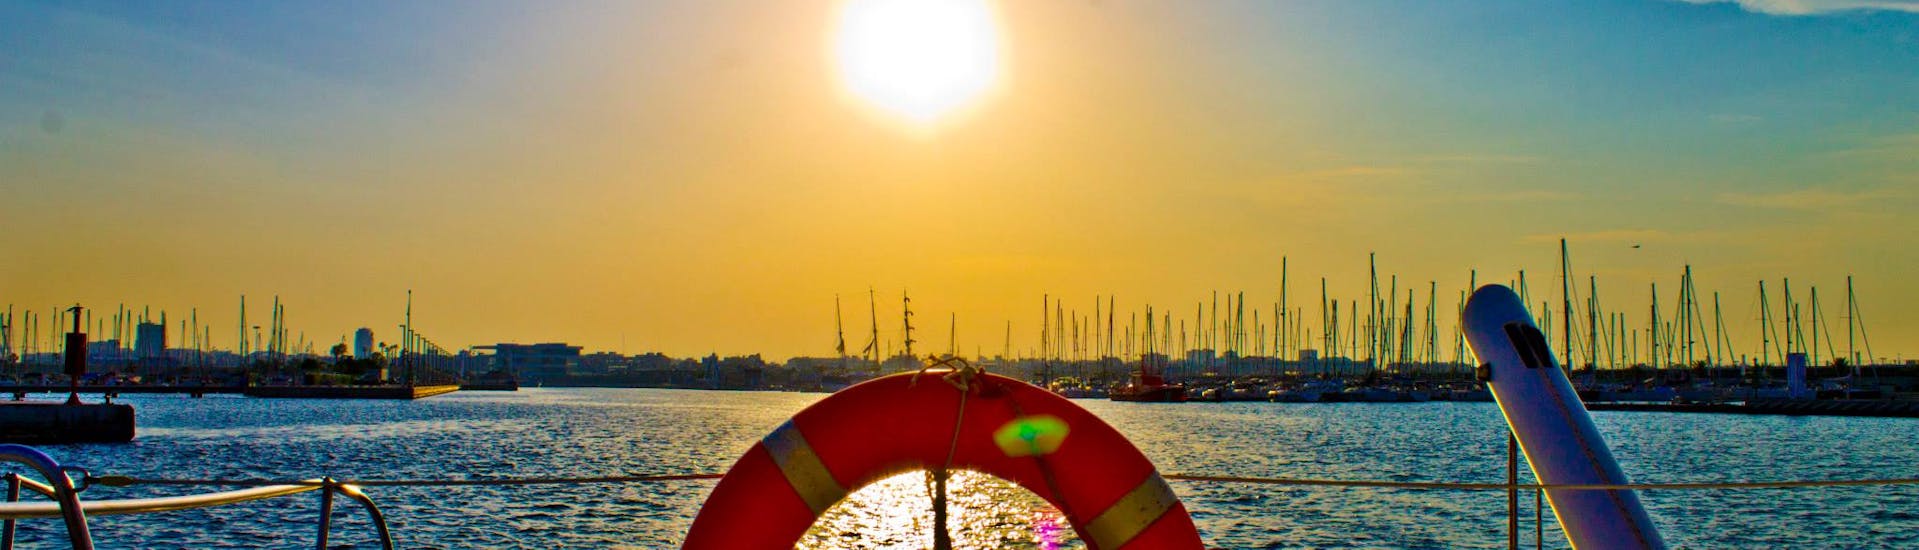 Il sole tramonta ad Altea durante un'escursione in catamarano con Mundo Marino.